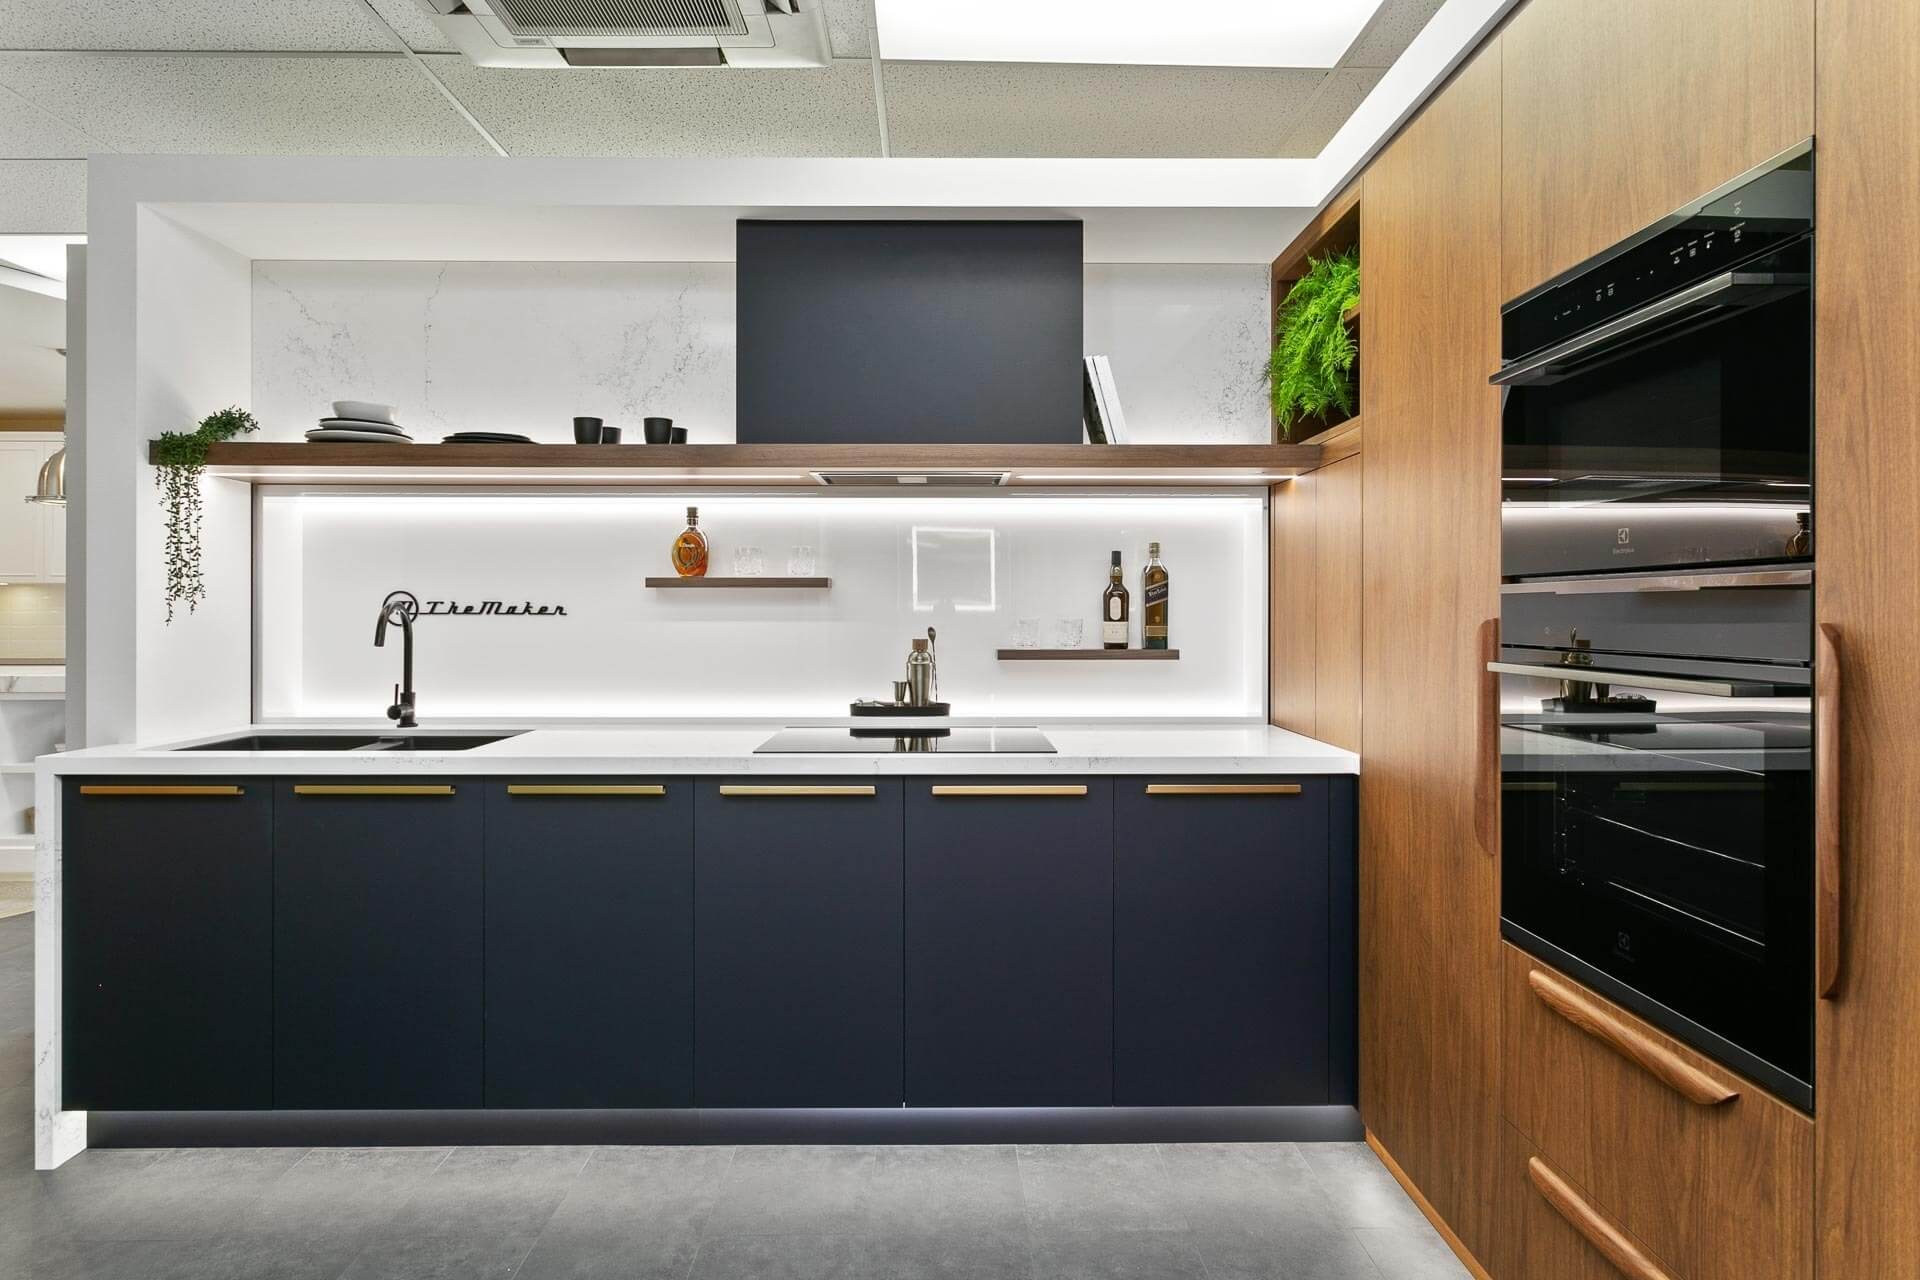 Oxford for darker kitchen colour schemes